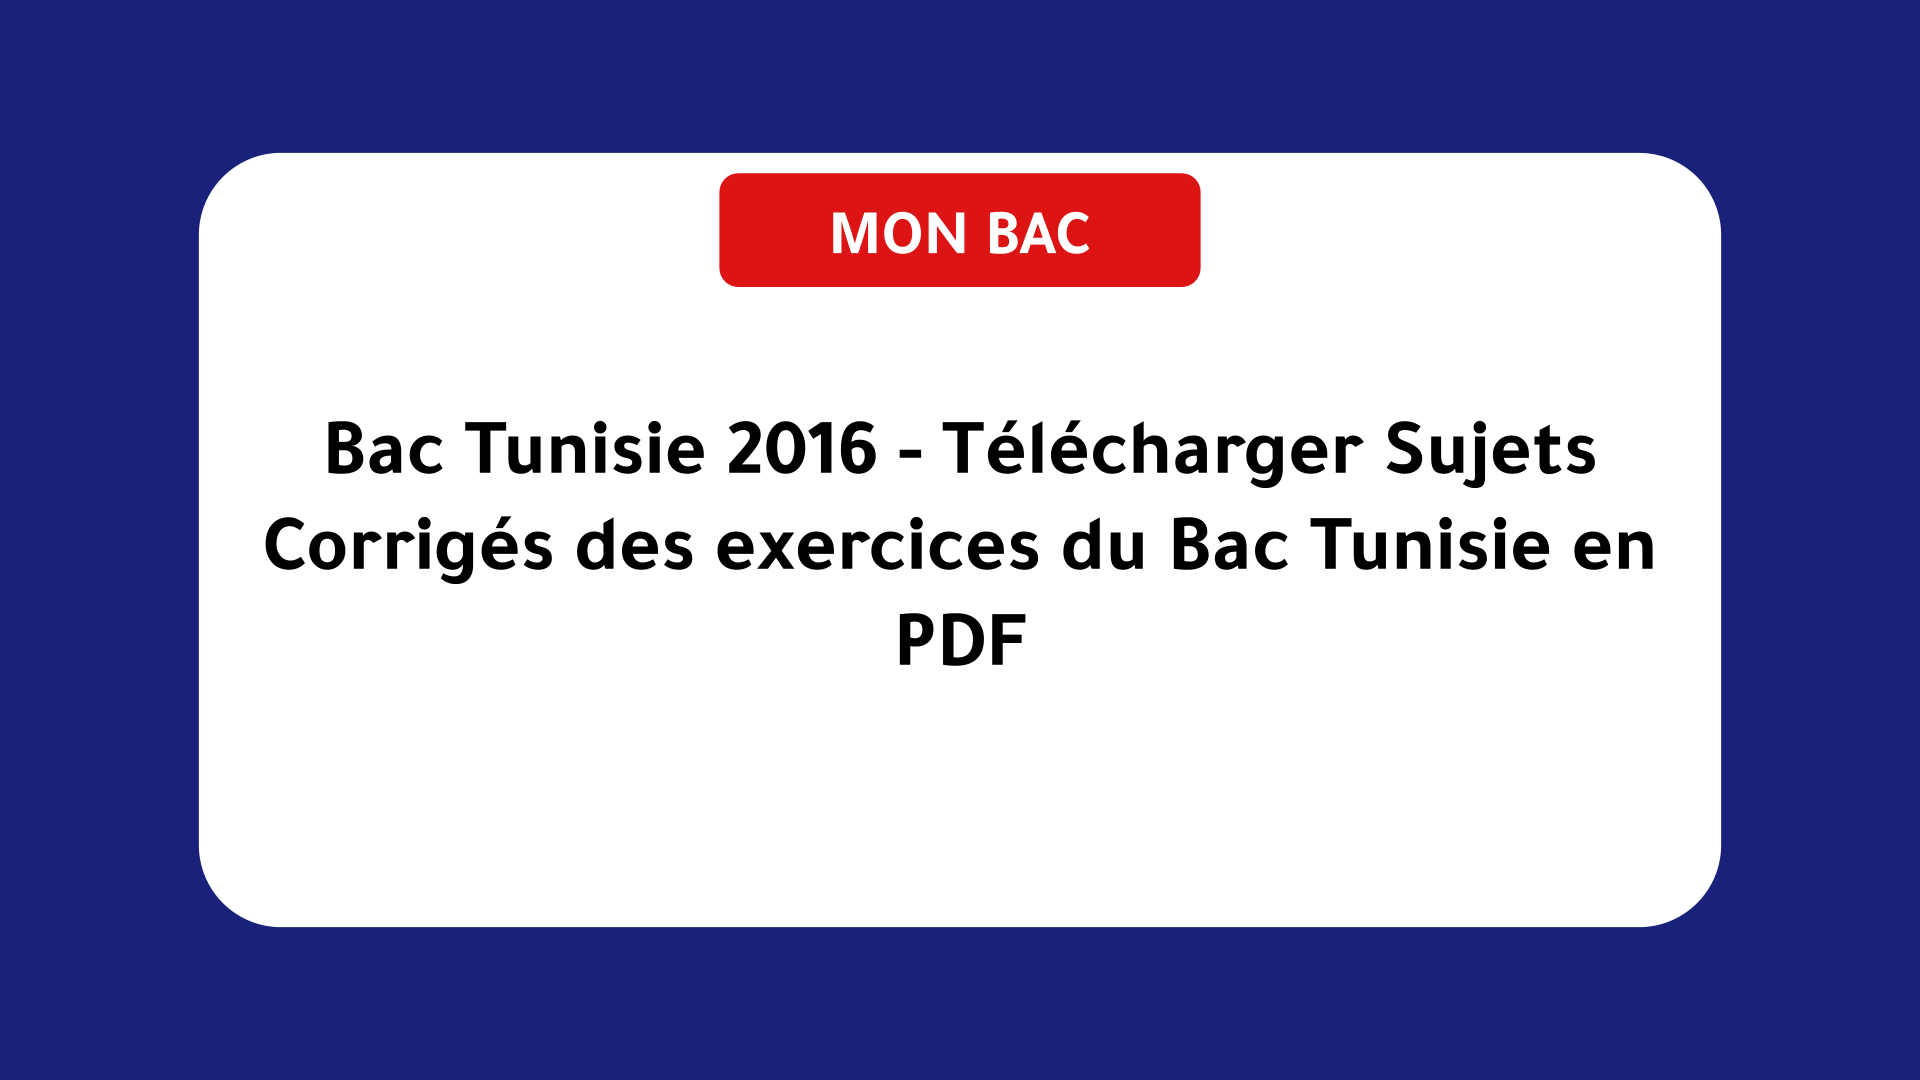 Bac Tunisie 2016 - Télécharger Sujets Corrigés des exercices du Bac Tunisie en PDF